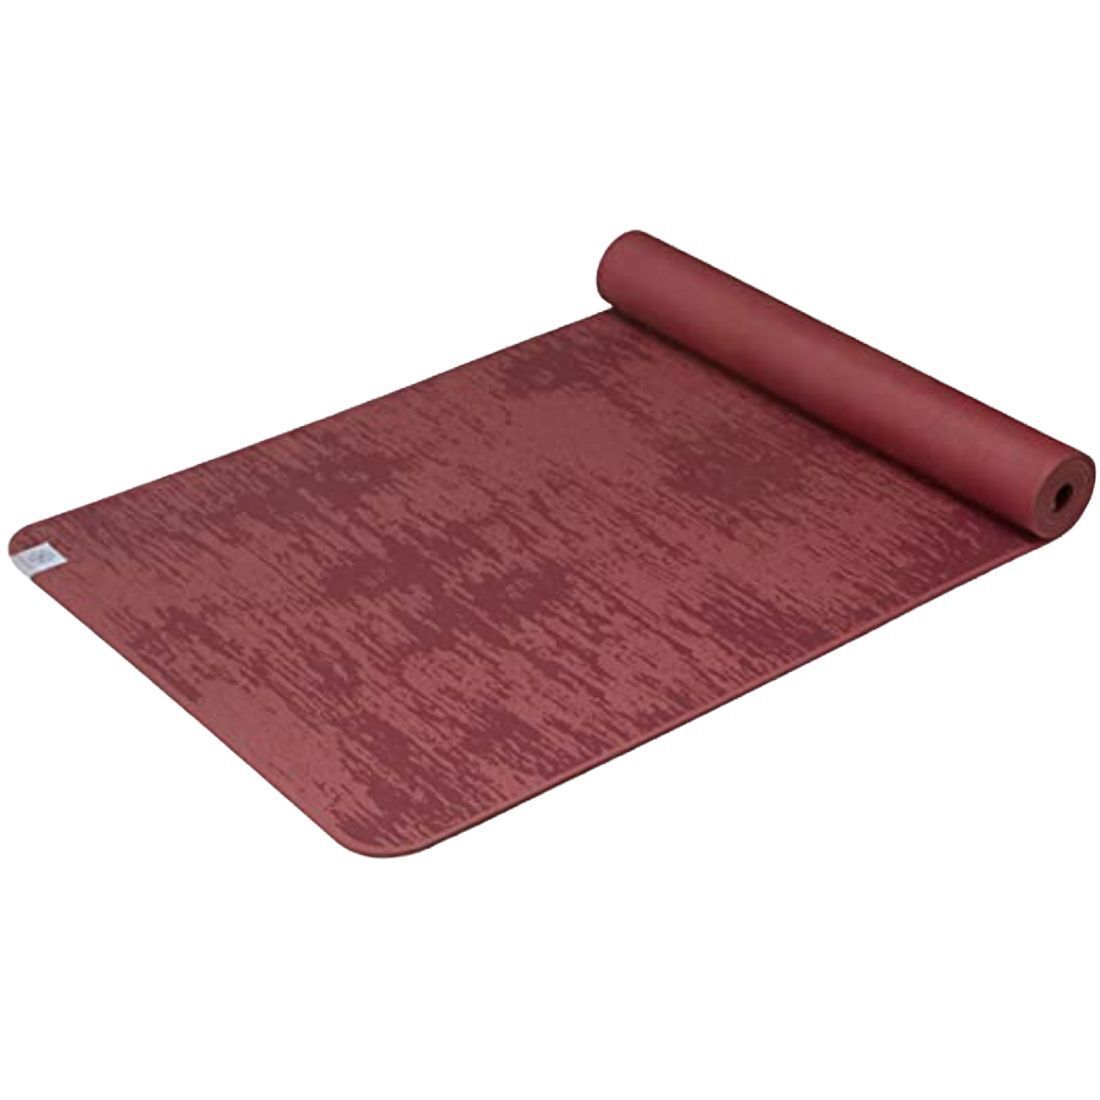 Gaiam Yoga Mat Size 68'' L x 24'' W x 6mm and 36 similar items